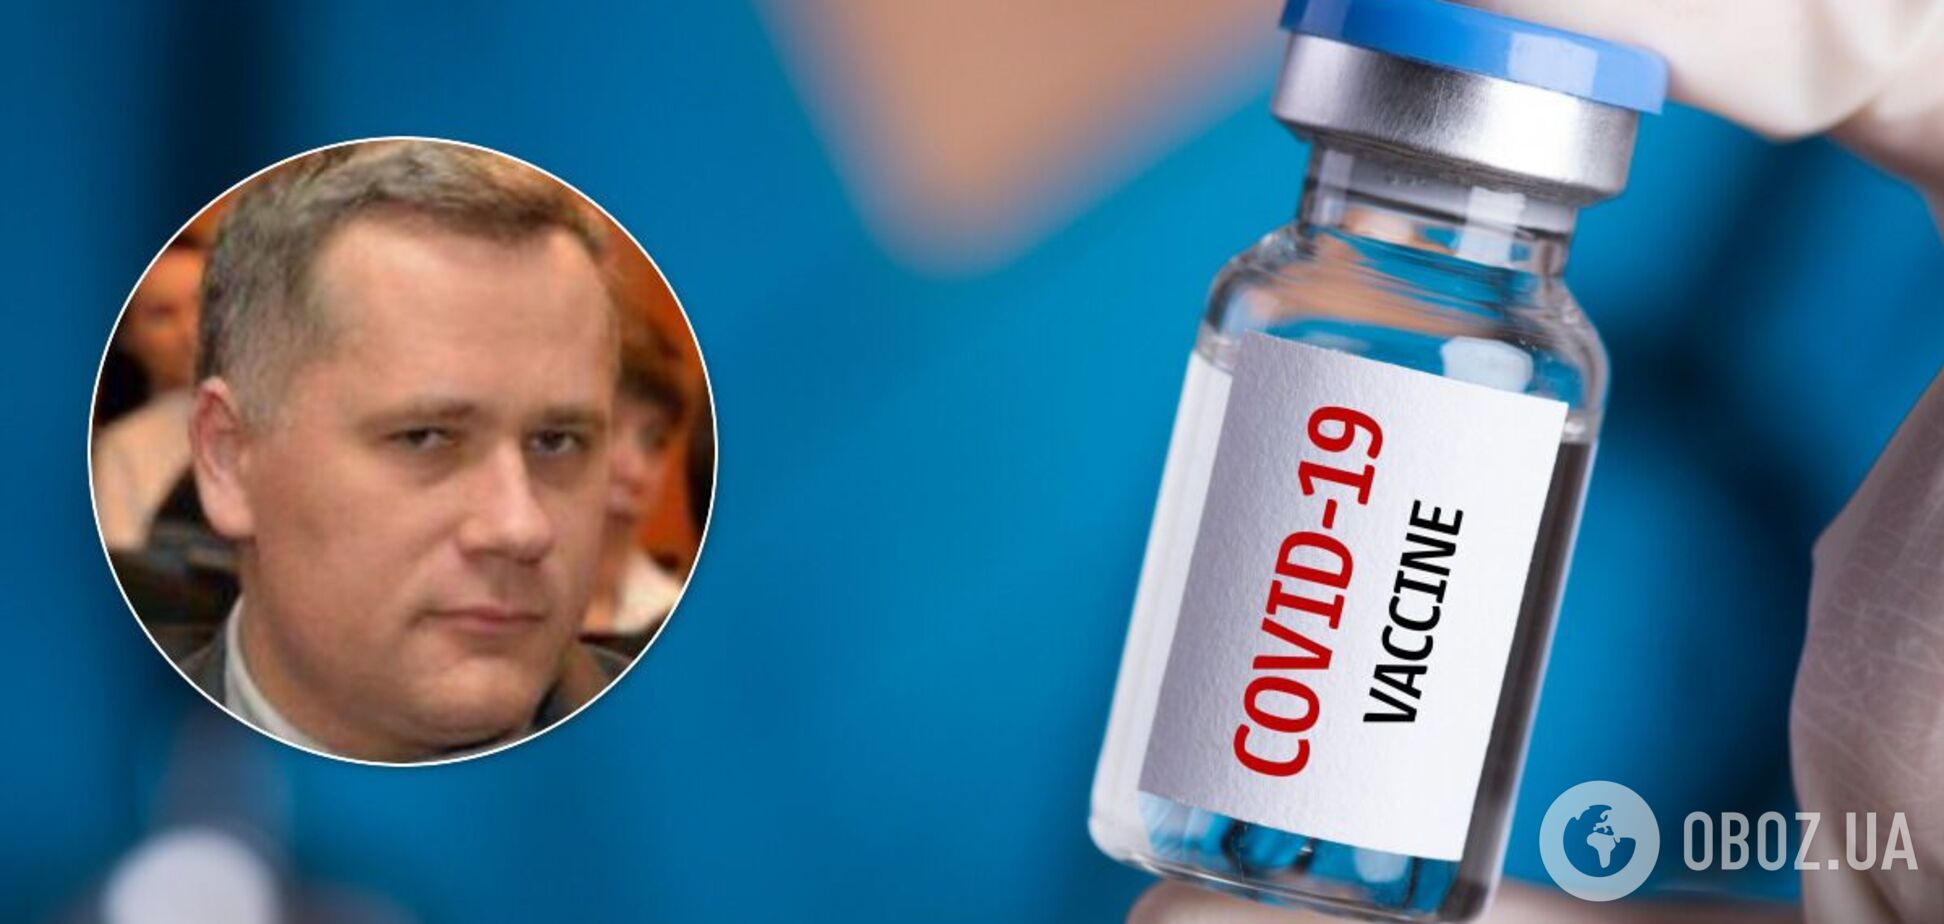 Закупівлю вакцин проти COVID-19 саботував функціонер Офісу президента, – джерело